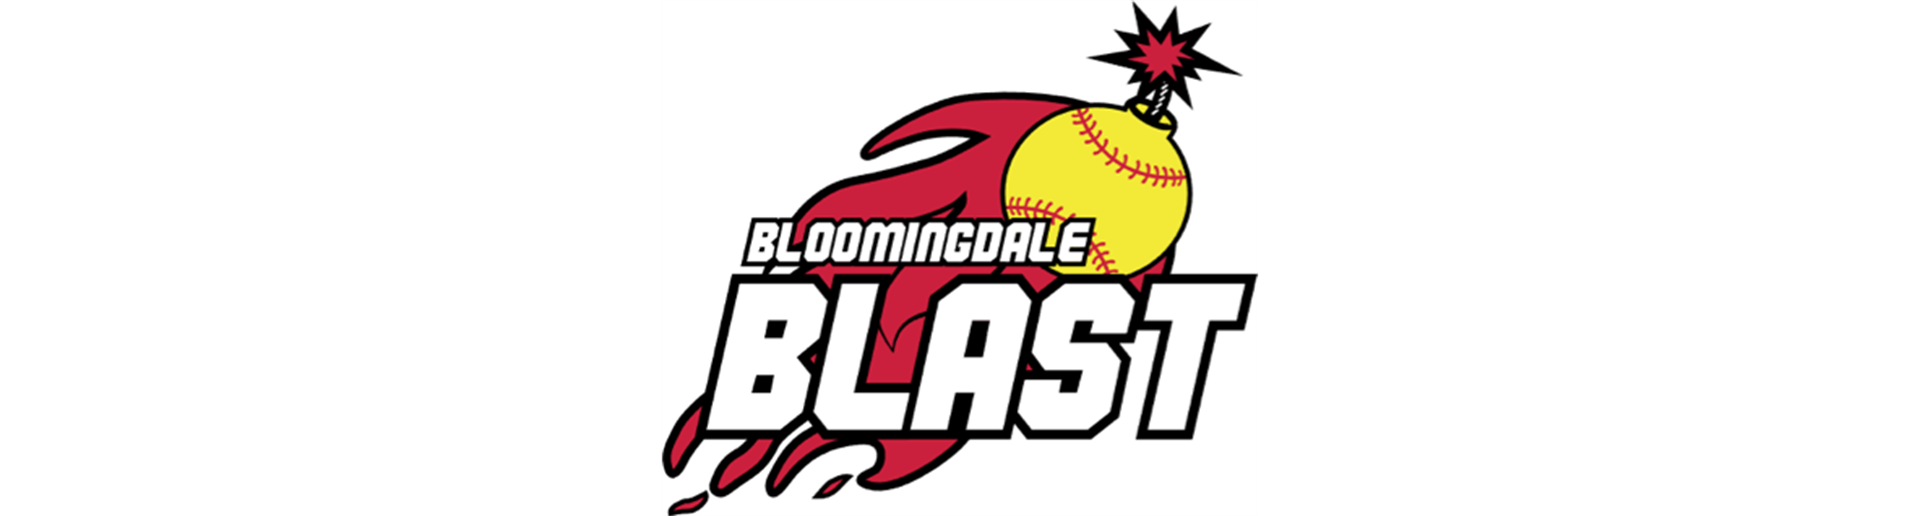 Bloomingdale Blast